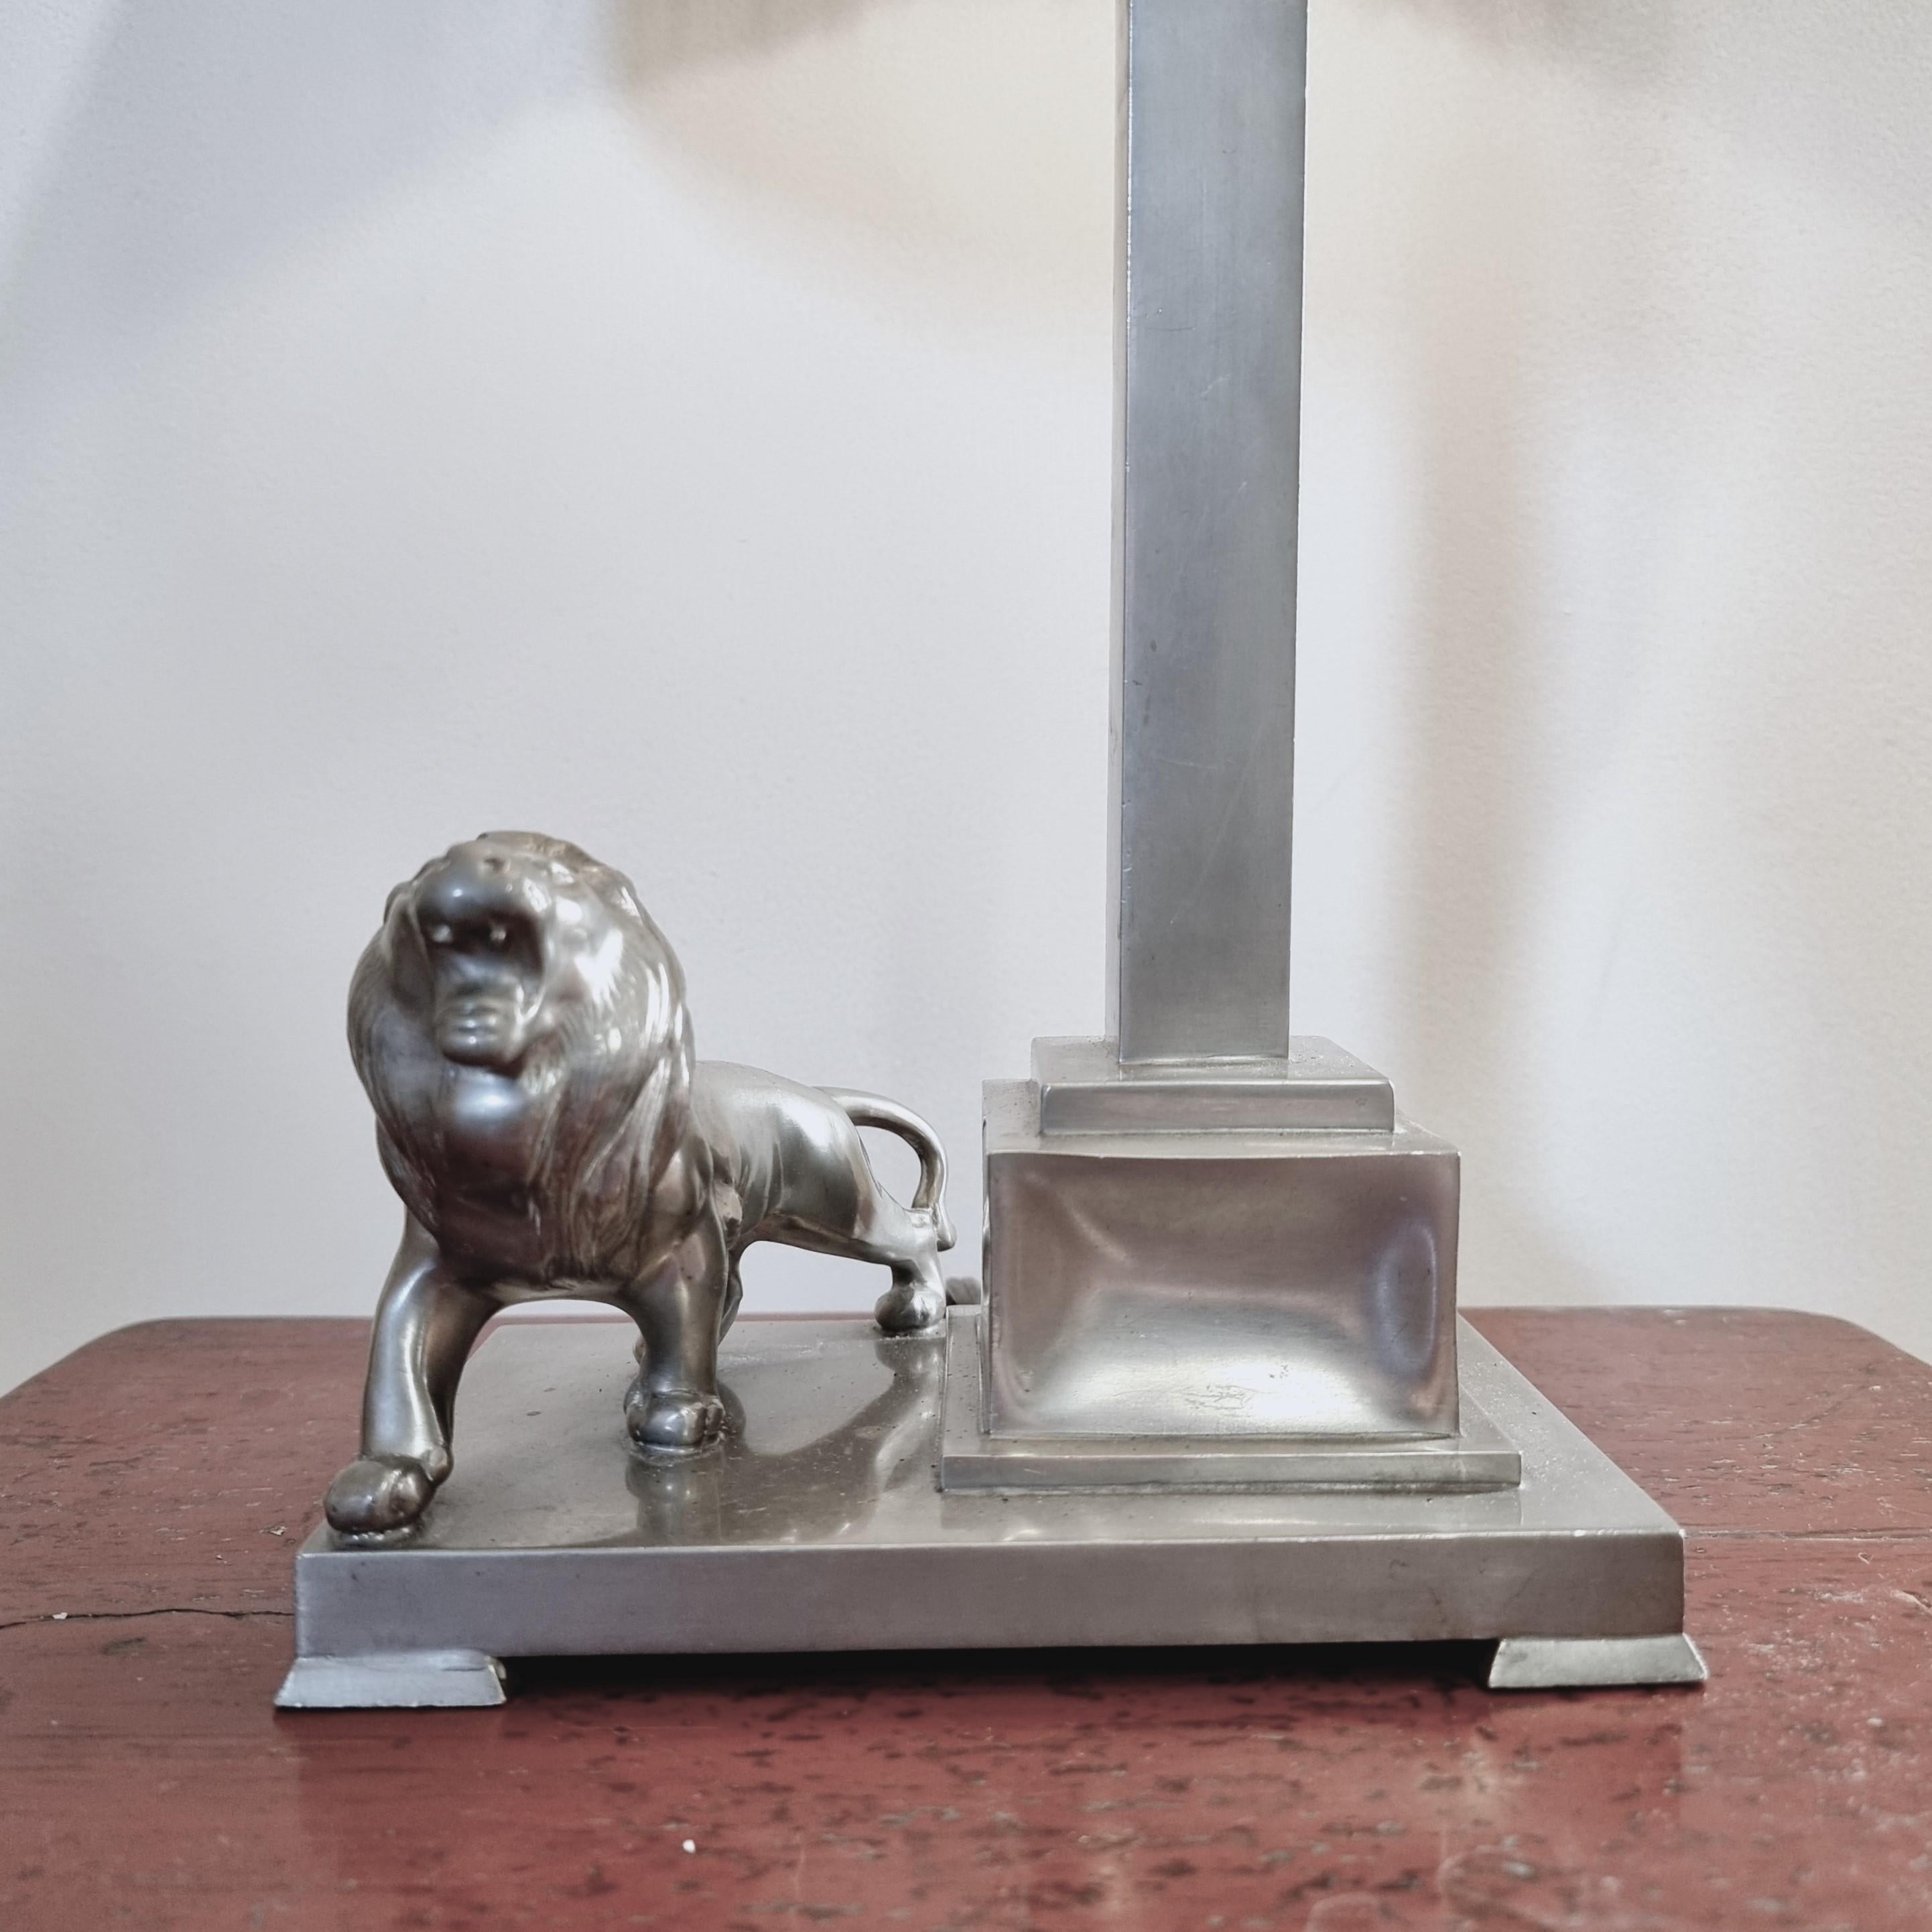 Lampe de table en étain avec décor de lion, par le joaillier de la cour Ernst Svedbom. Daté de 1932 (F8), grâce suédoise/art déco.

Avec les poinçons des fabricants. En bon état, douille avec bosses non visibles lorsque l'abat-jour est allumé.